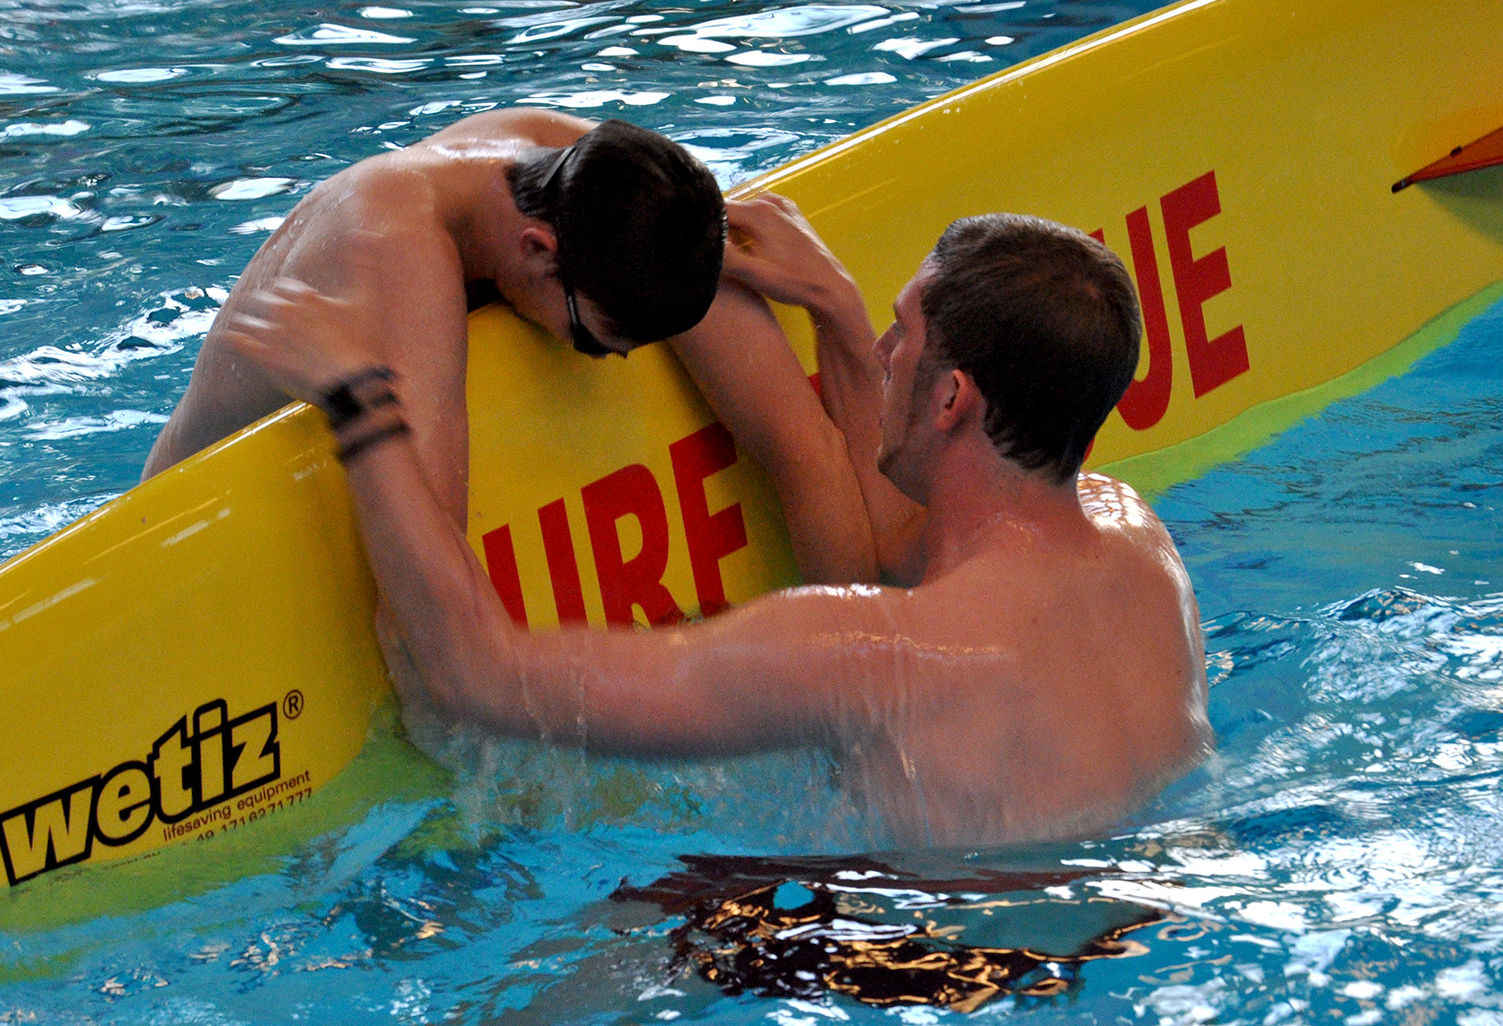 Ein Rettungsschwimmer in Ausbildung: Eine Person wird auf ein Rettungsbrett gerettet.